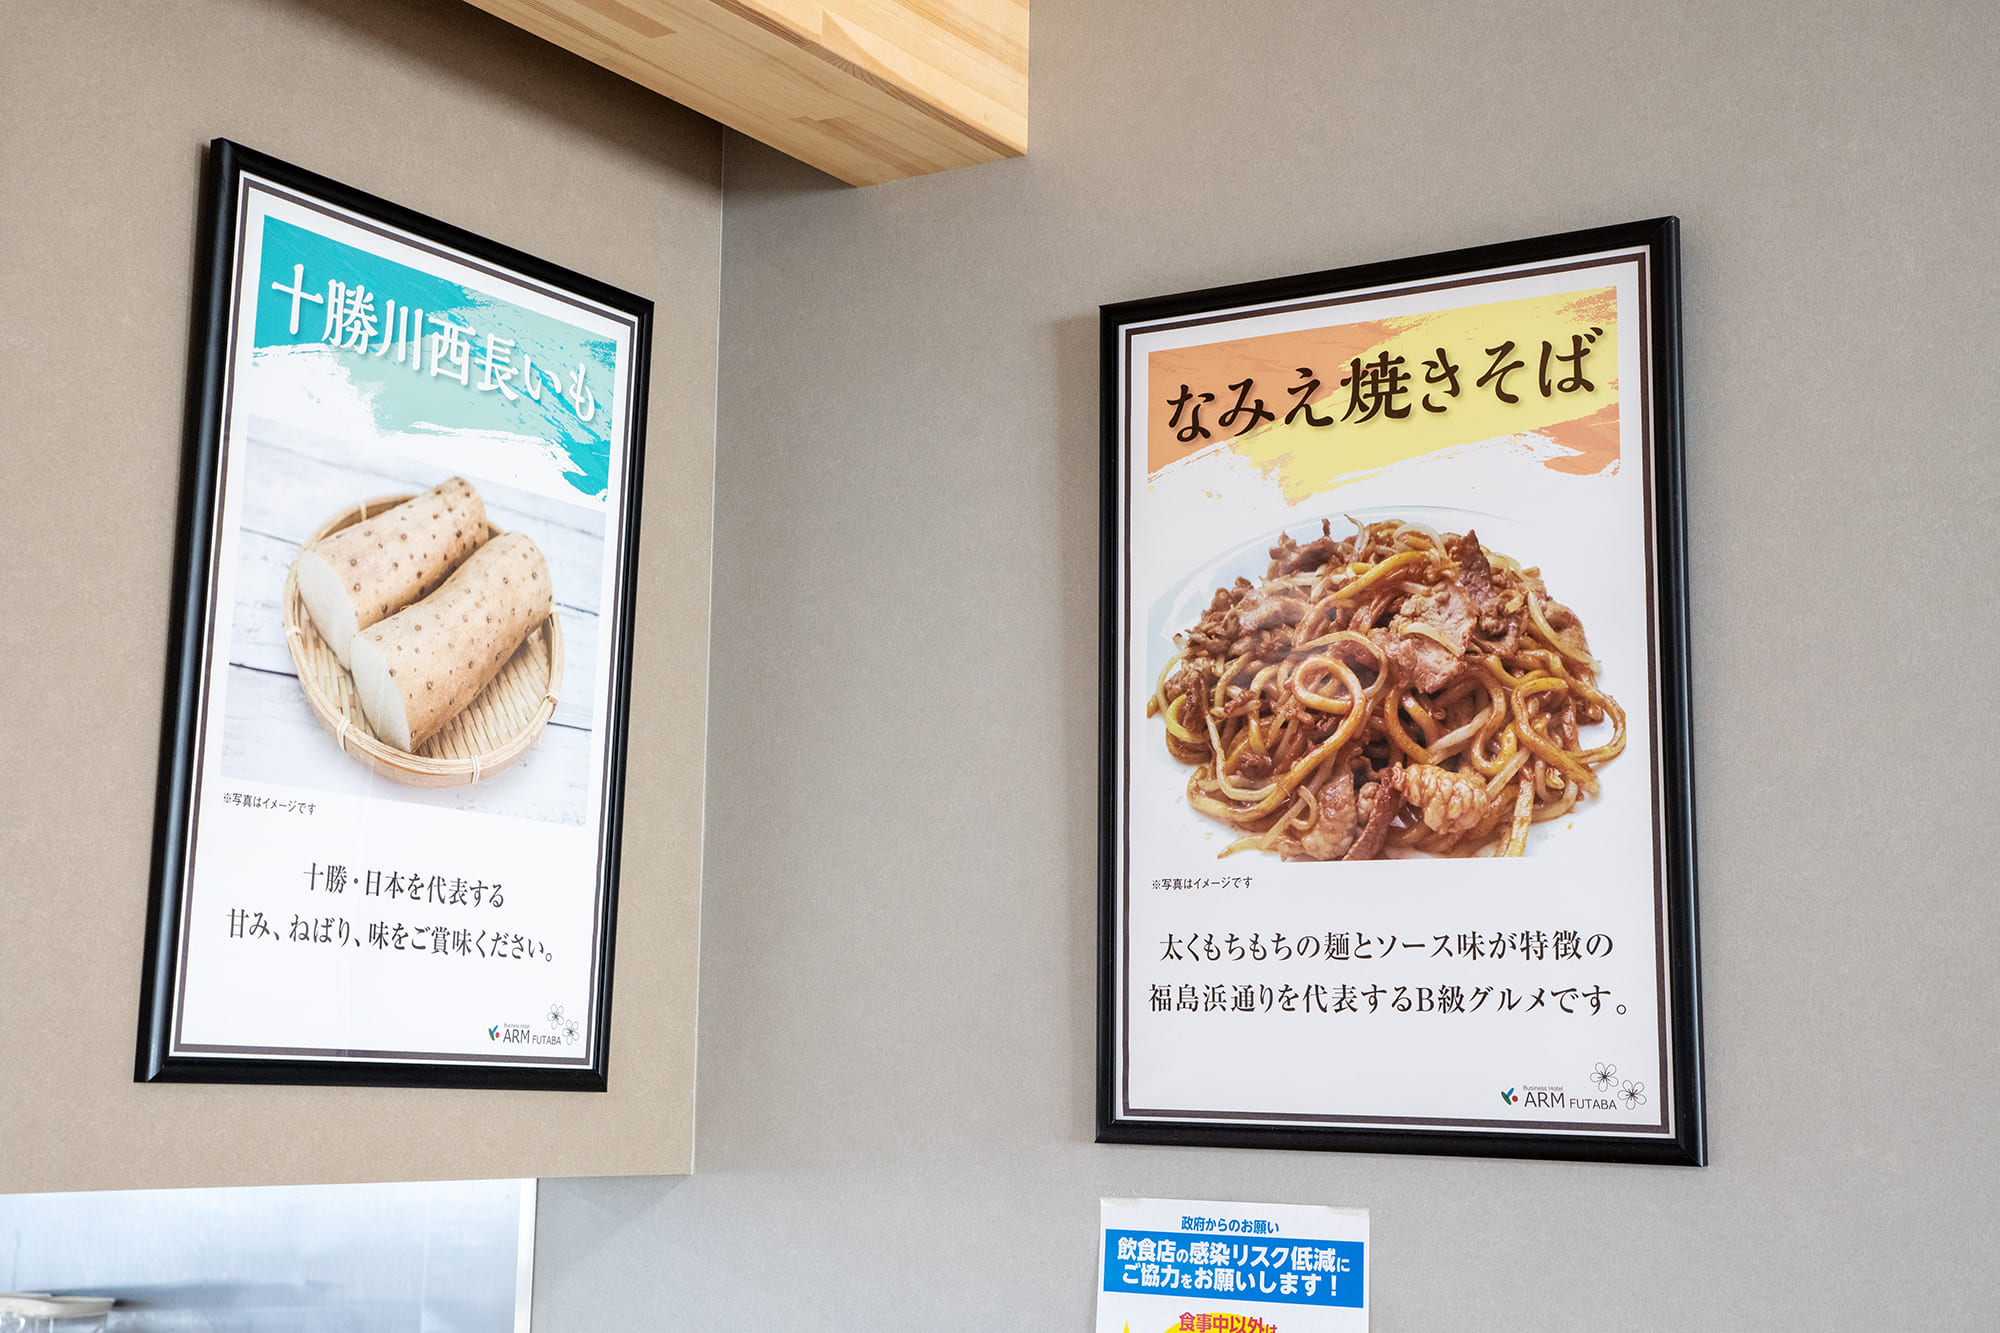 ご当地グルメの「なみえ焼きそば」や、北海道の食材など、名物は看板でアピール